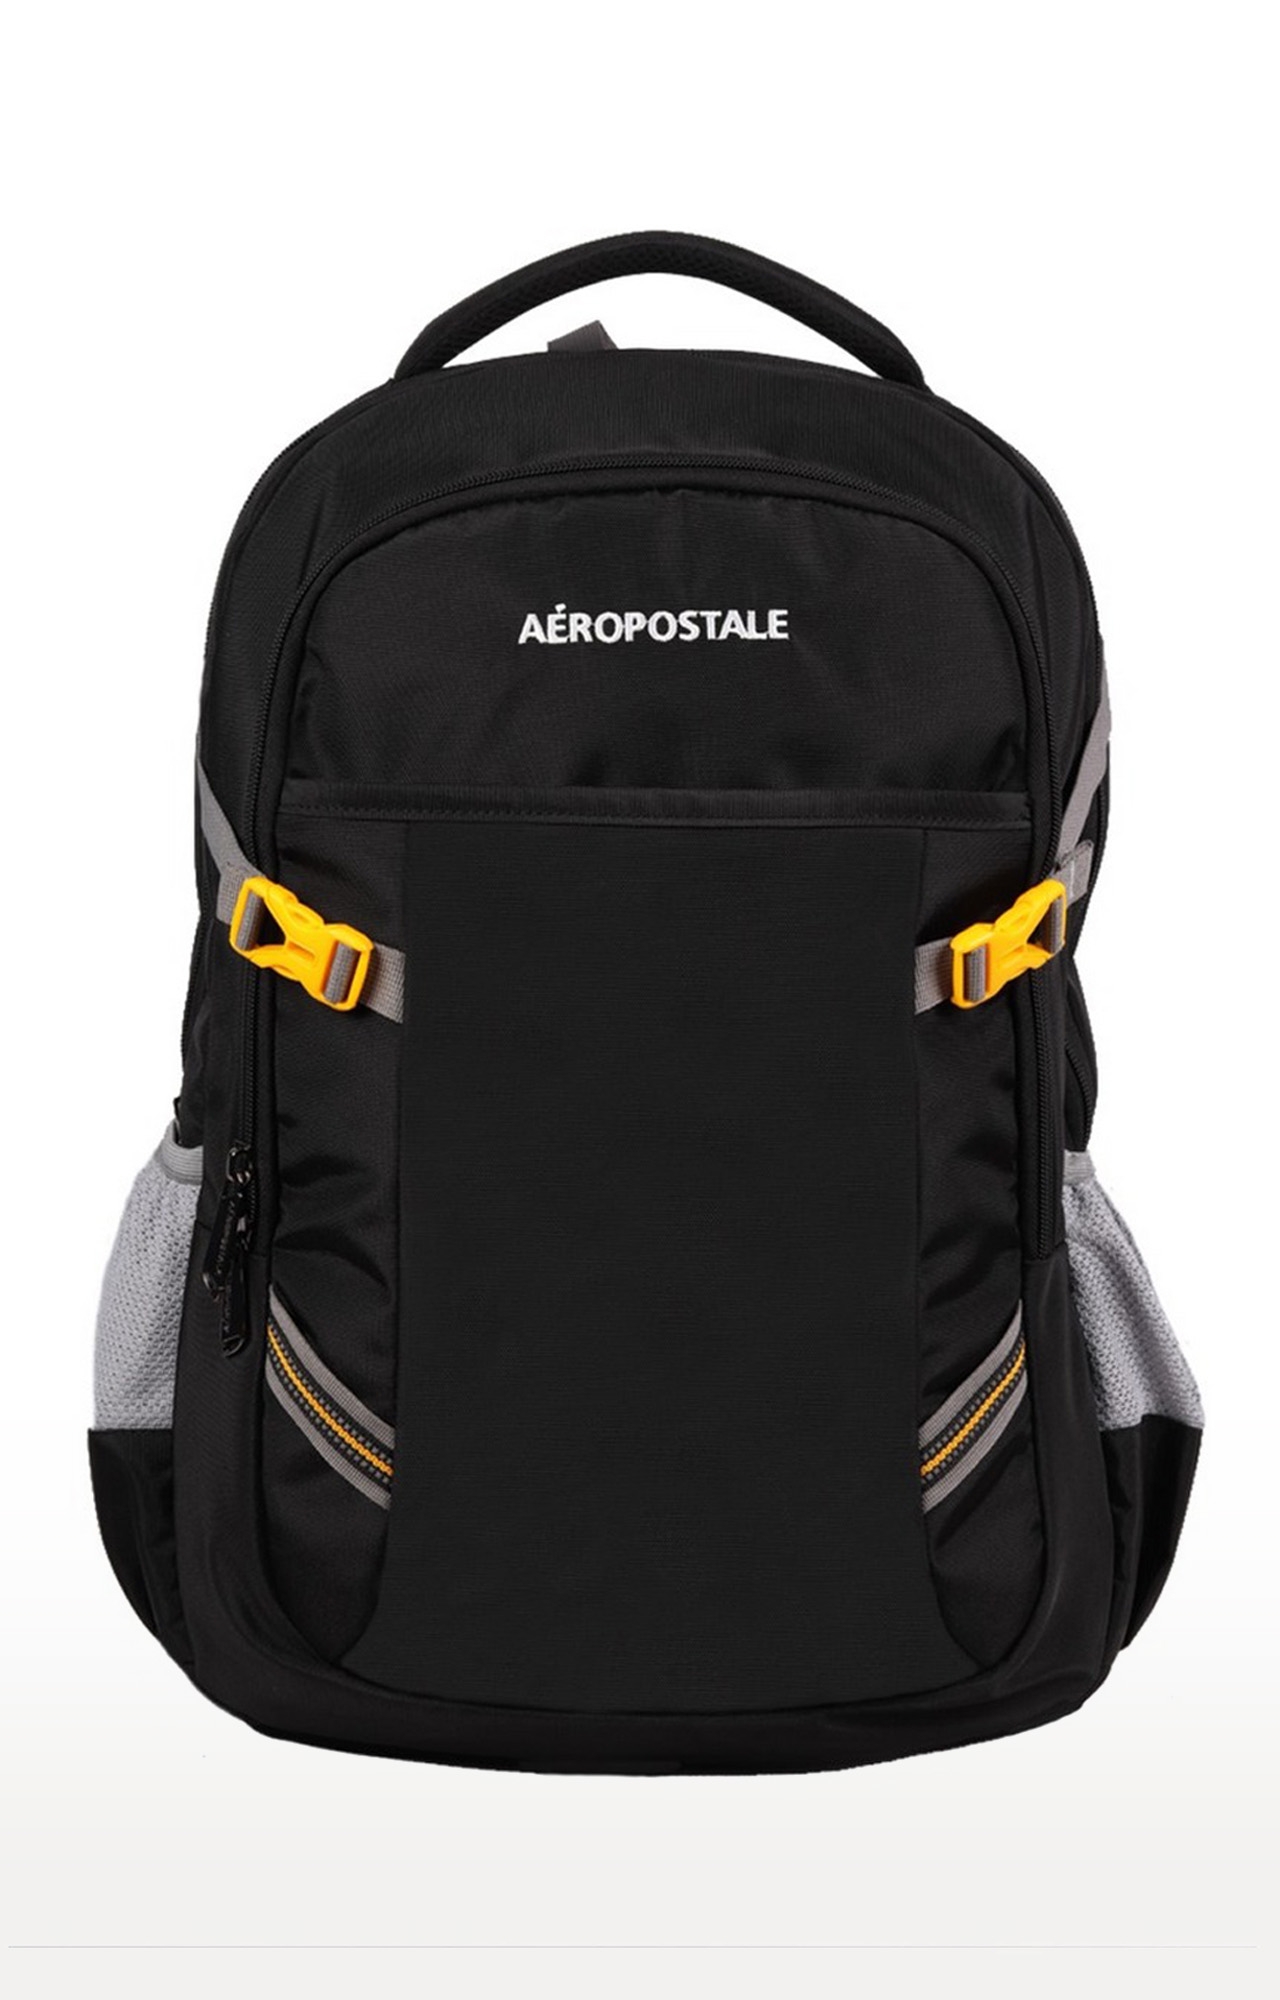 Aeropostale Backpack Extra Pocket Soft Adjustable Straps Bag